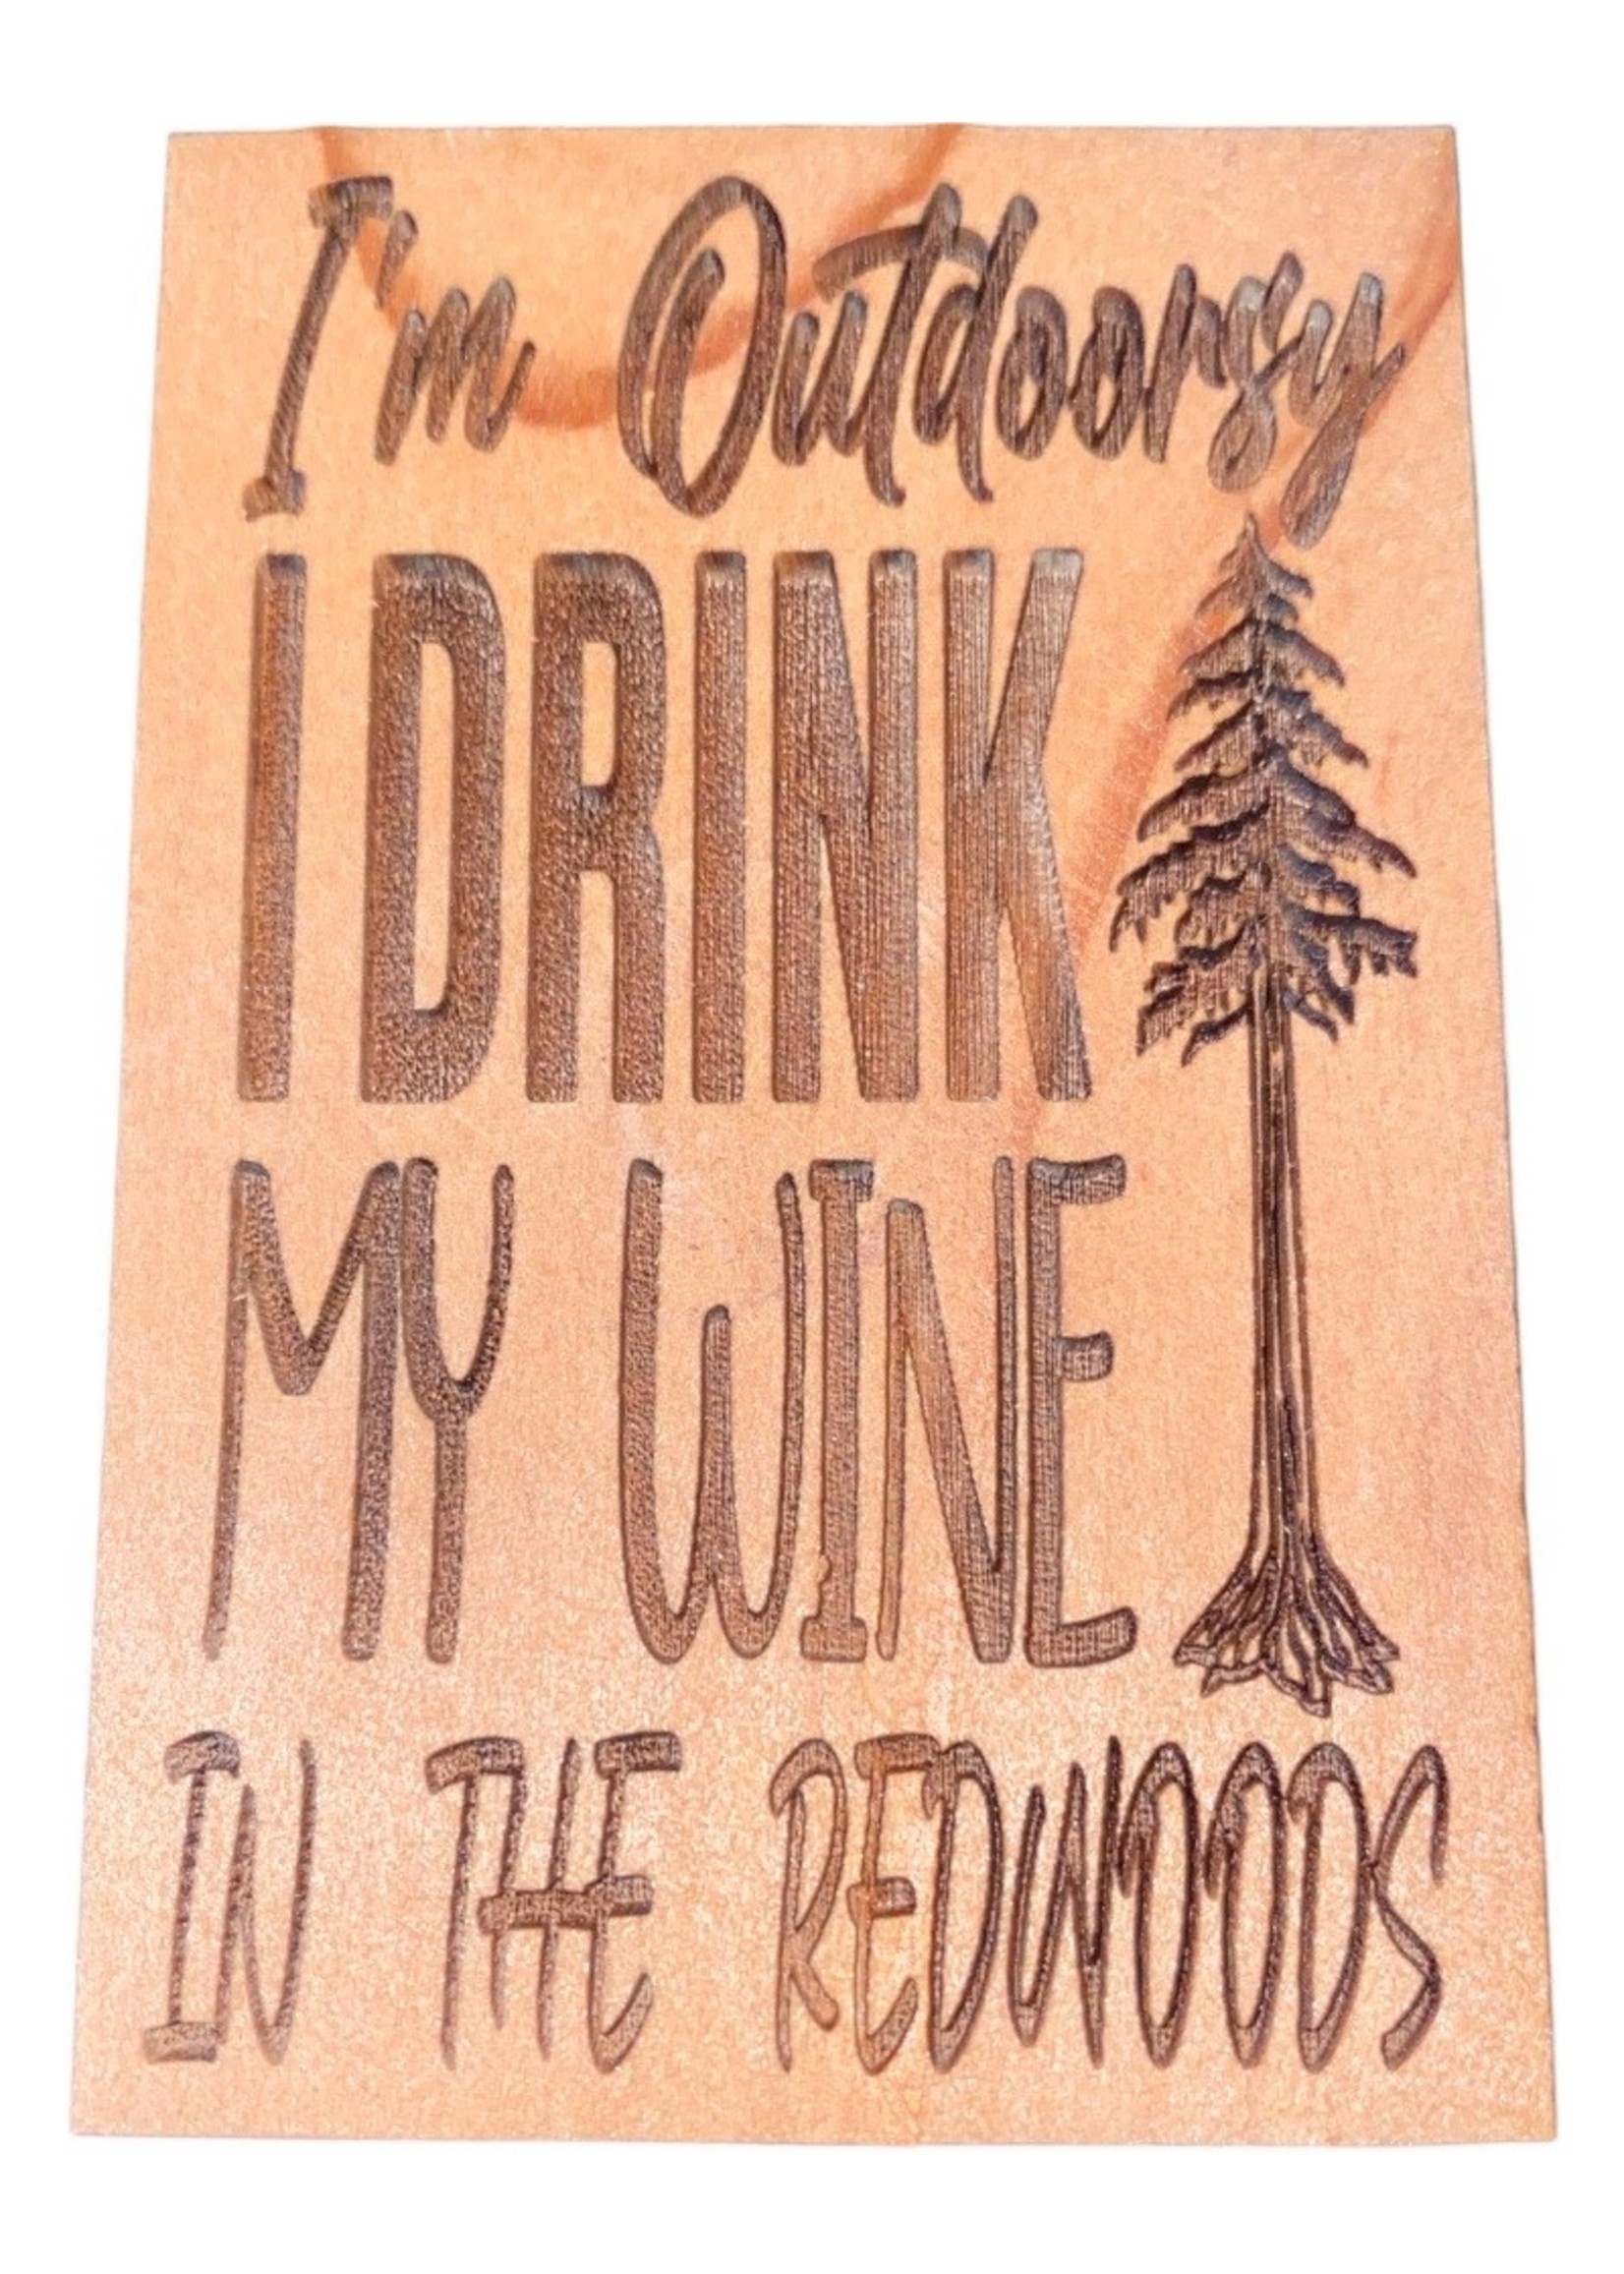 Magnet (Redwood - Wine in Redwoods)